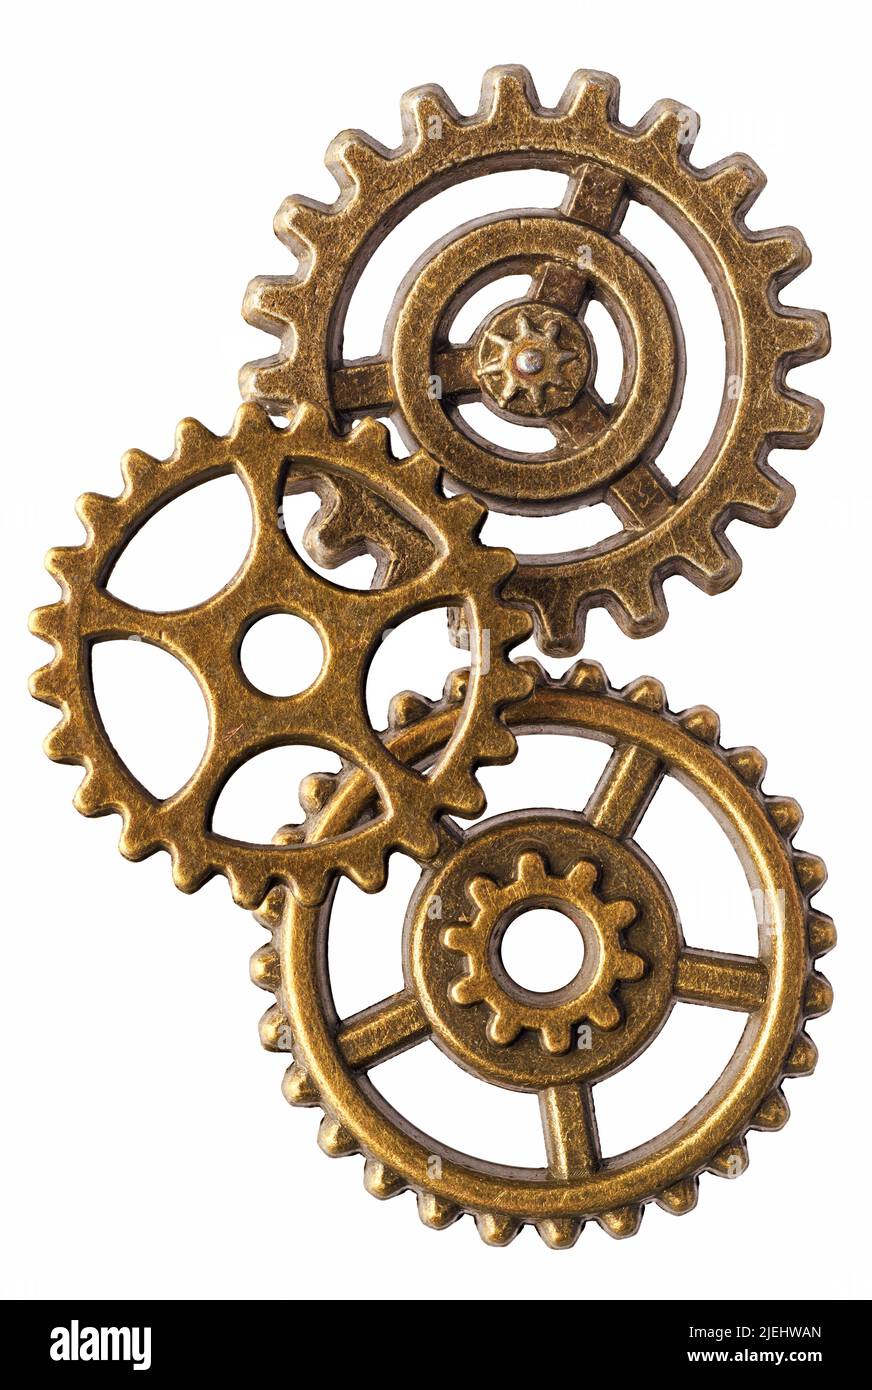 Grupo de tres ruedas dentadas de bronce, aisladas sobre fondo blanco Foto de stock